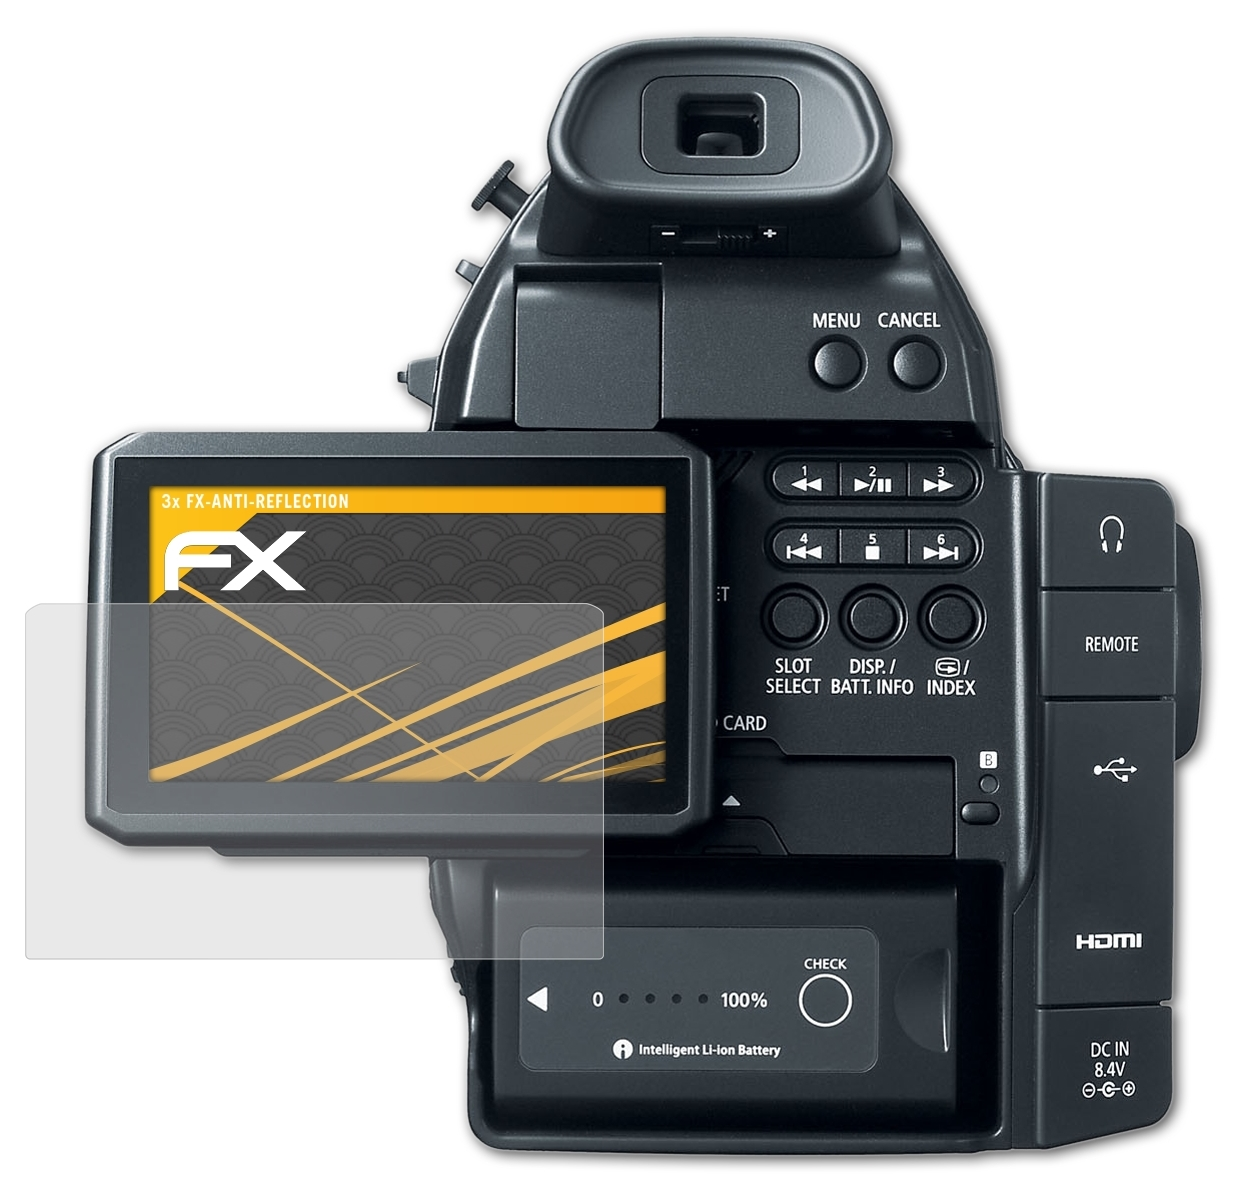 C100) ATFOLIX Displayschutz(für EOS 3x FX-Antireflex Canon